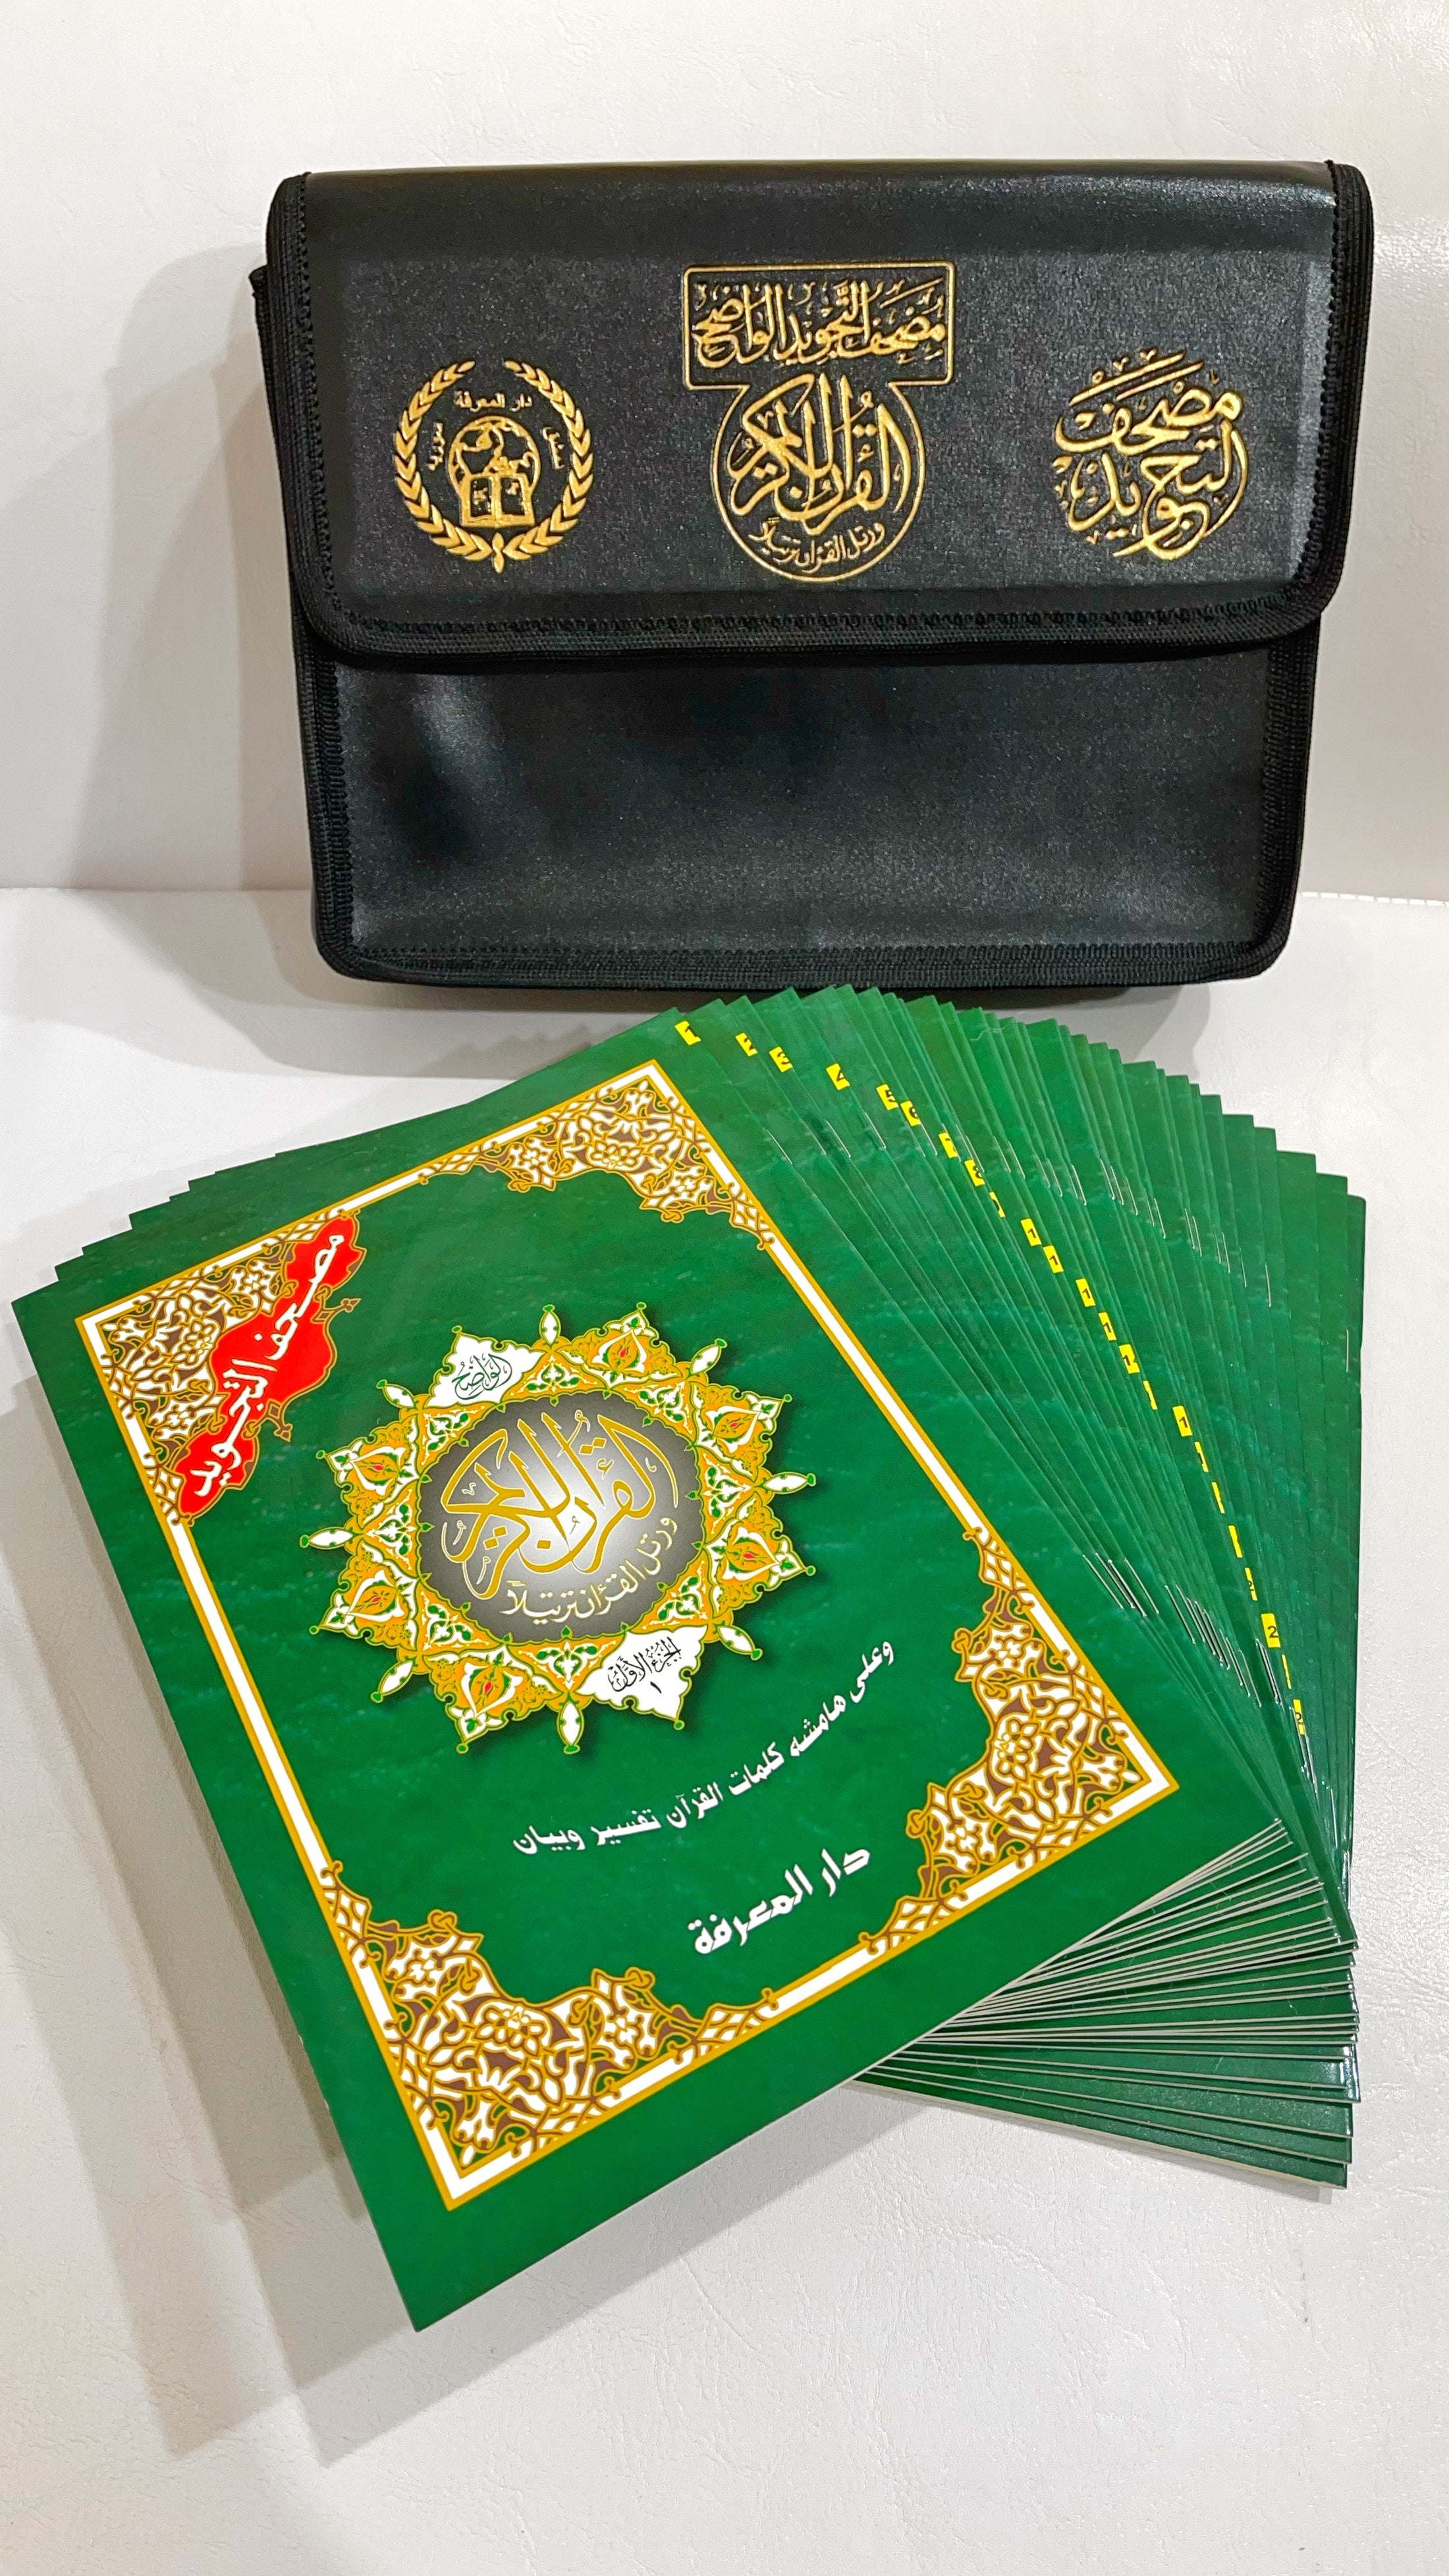 Corano tajwid khatma - hafs- Hijab Paradise- Corano è completo di tutte le 114 sure divise in 30 libricini -custode rigida 